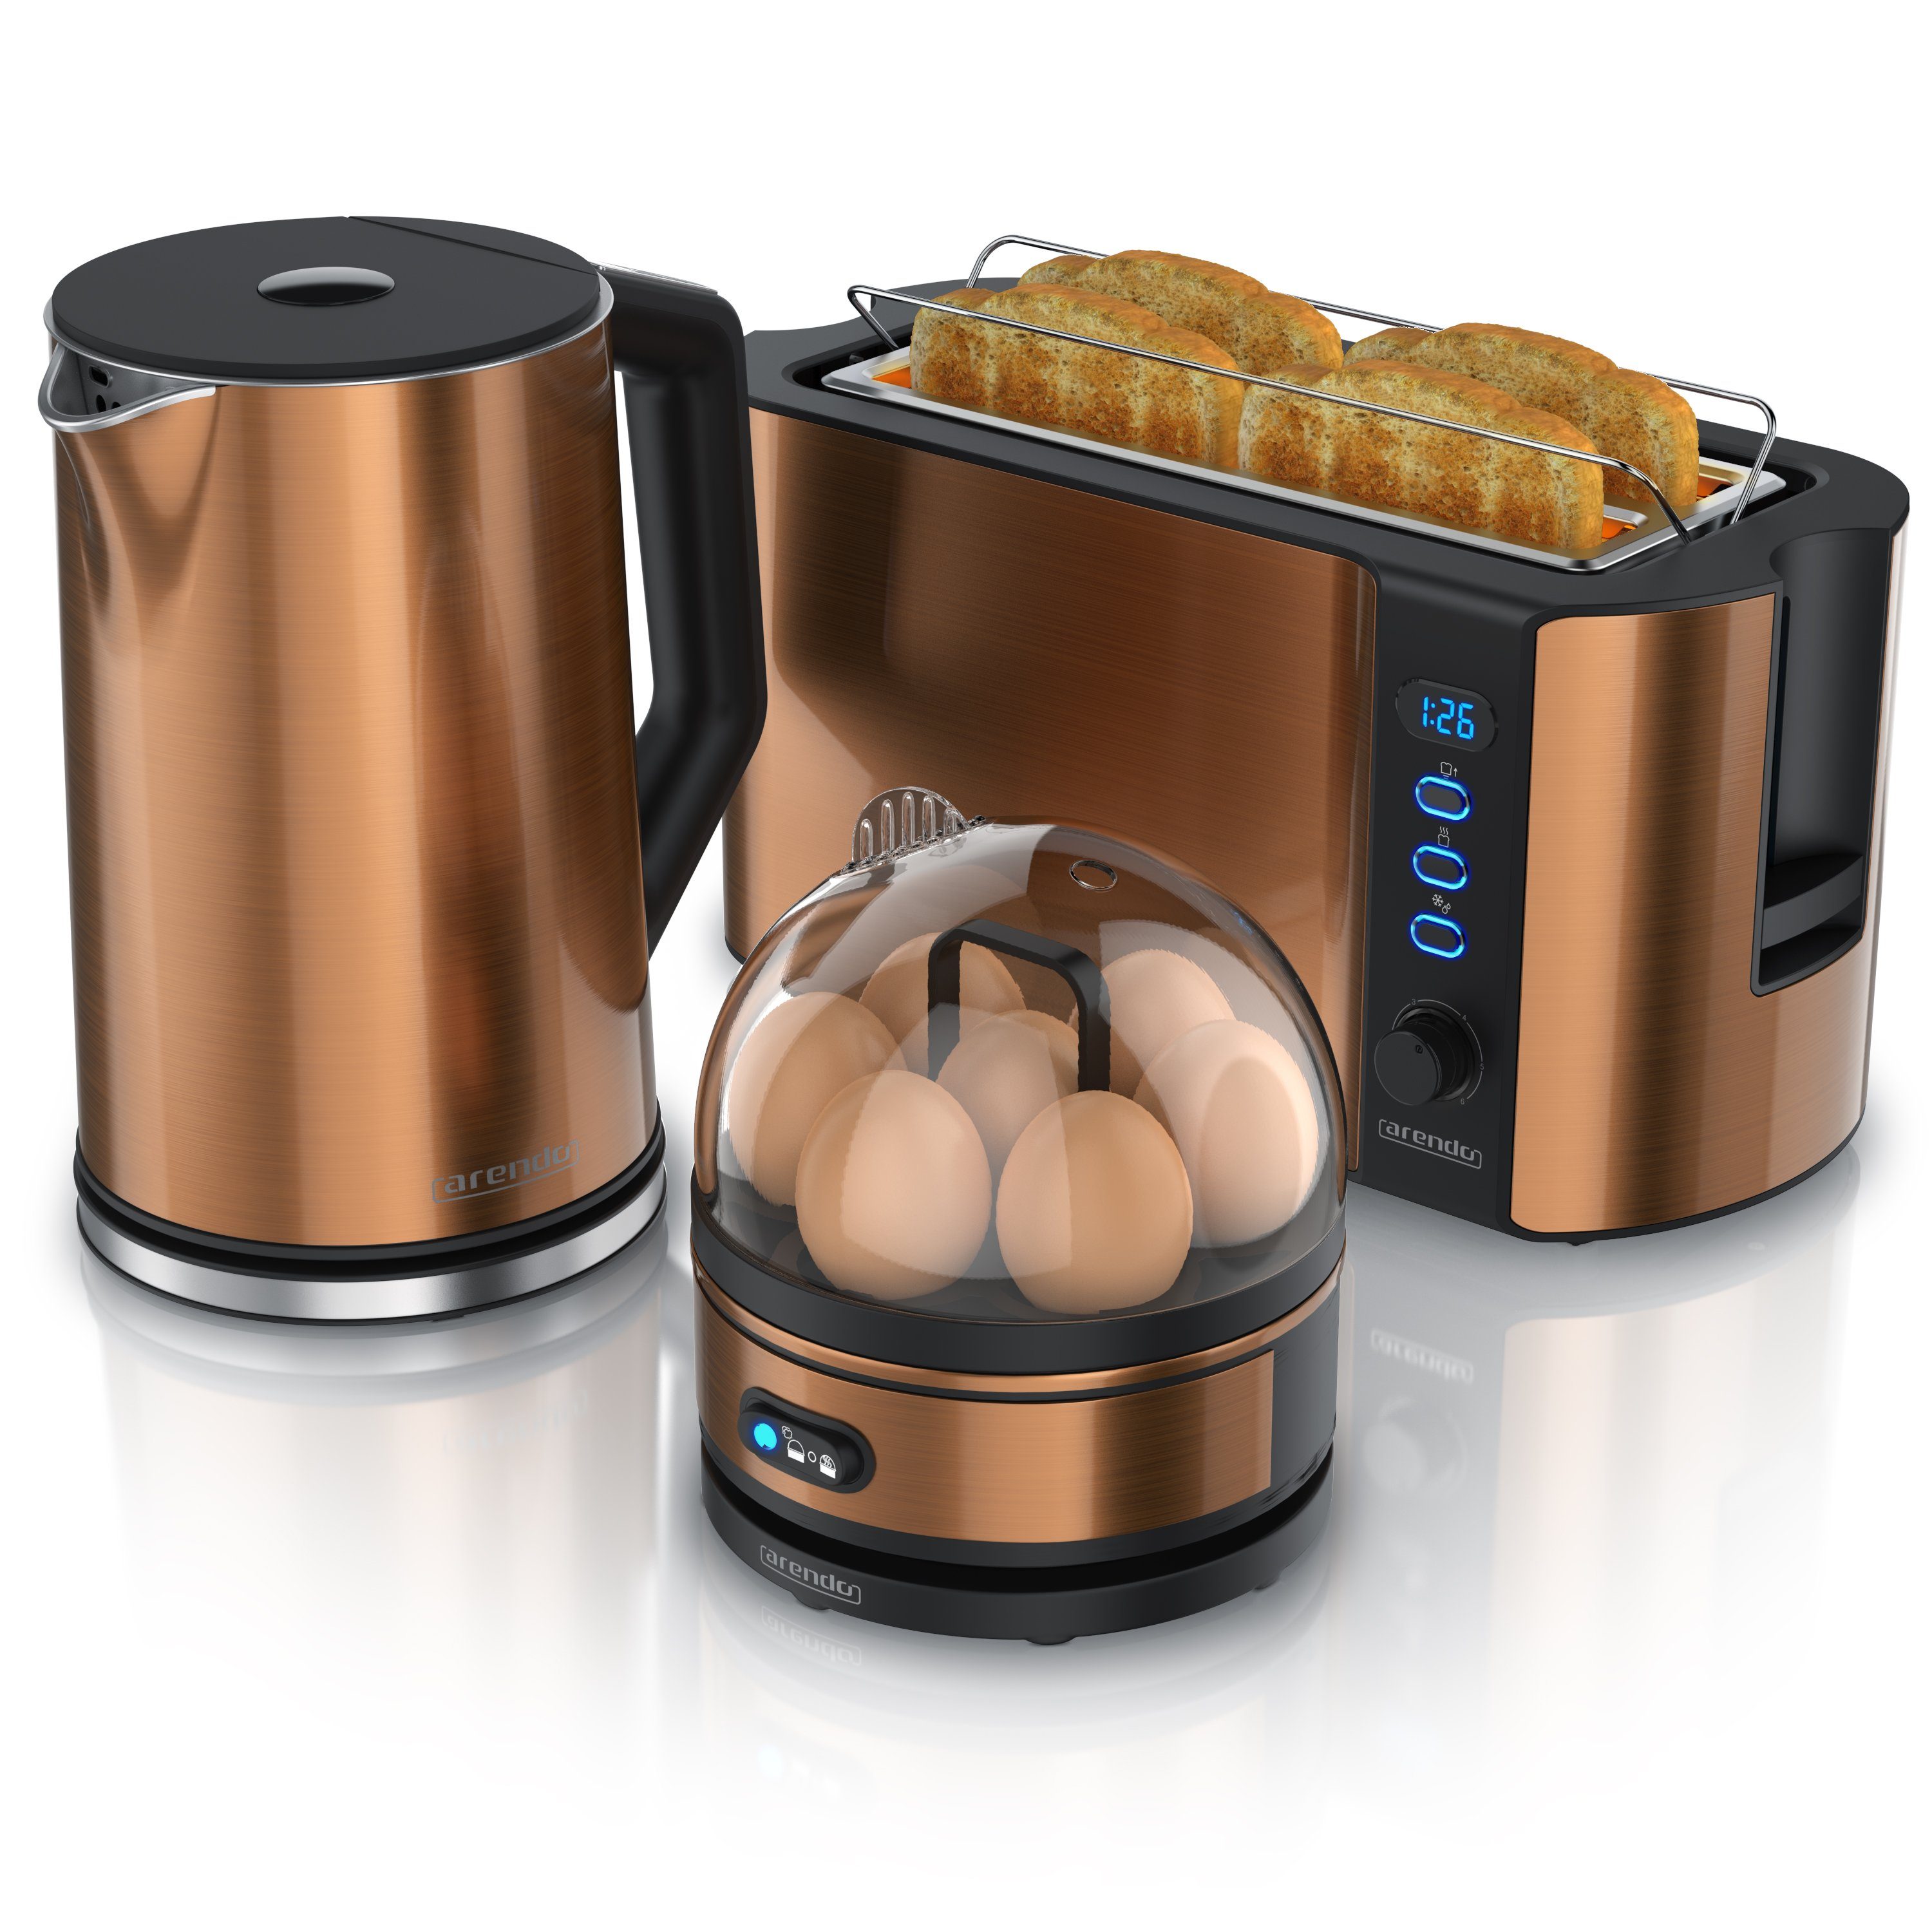 Arendo Frühstücks-Set (3-tlg), Wasserkocher 1,5l, 4-Scheiben Toaster, 7er Eierkocher, Kupfer